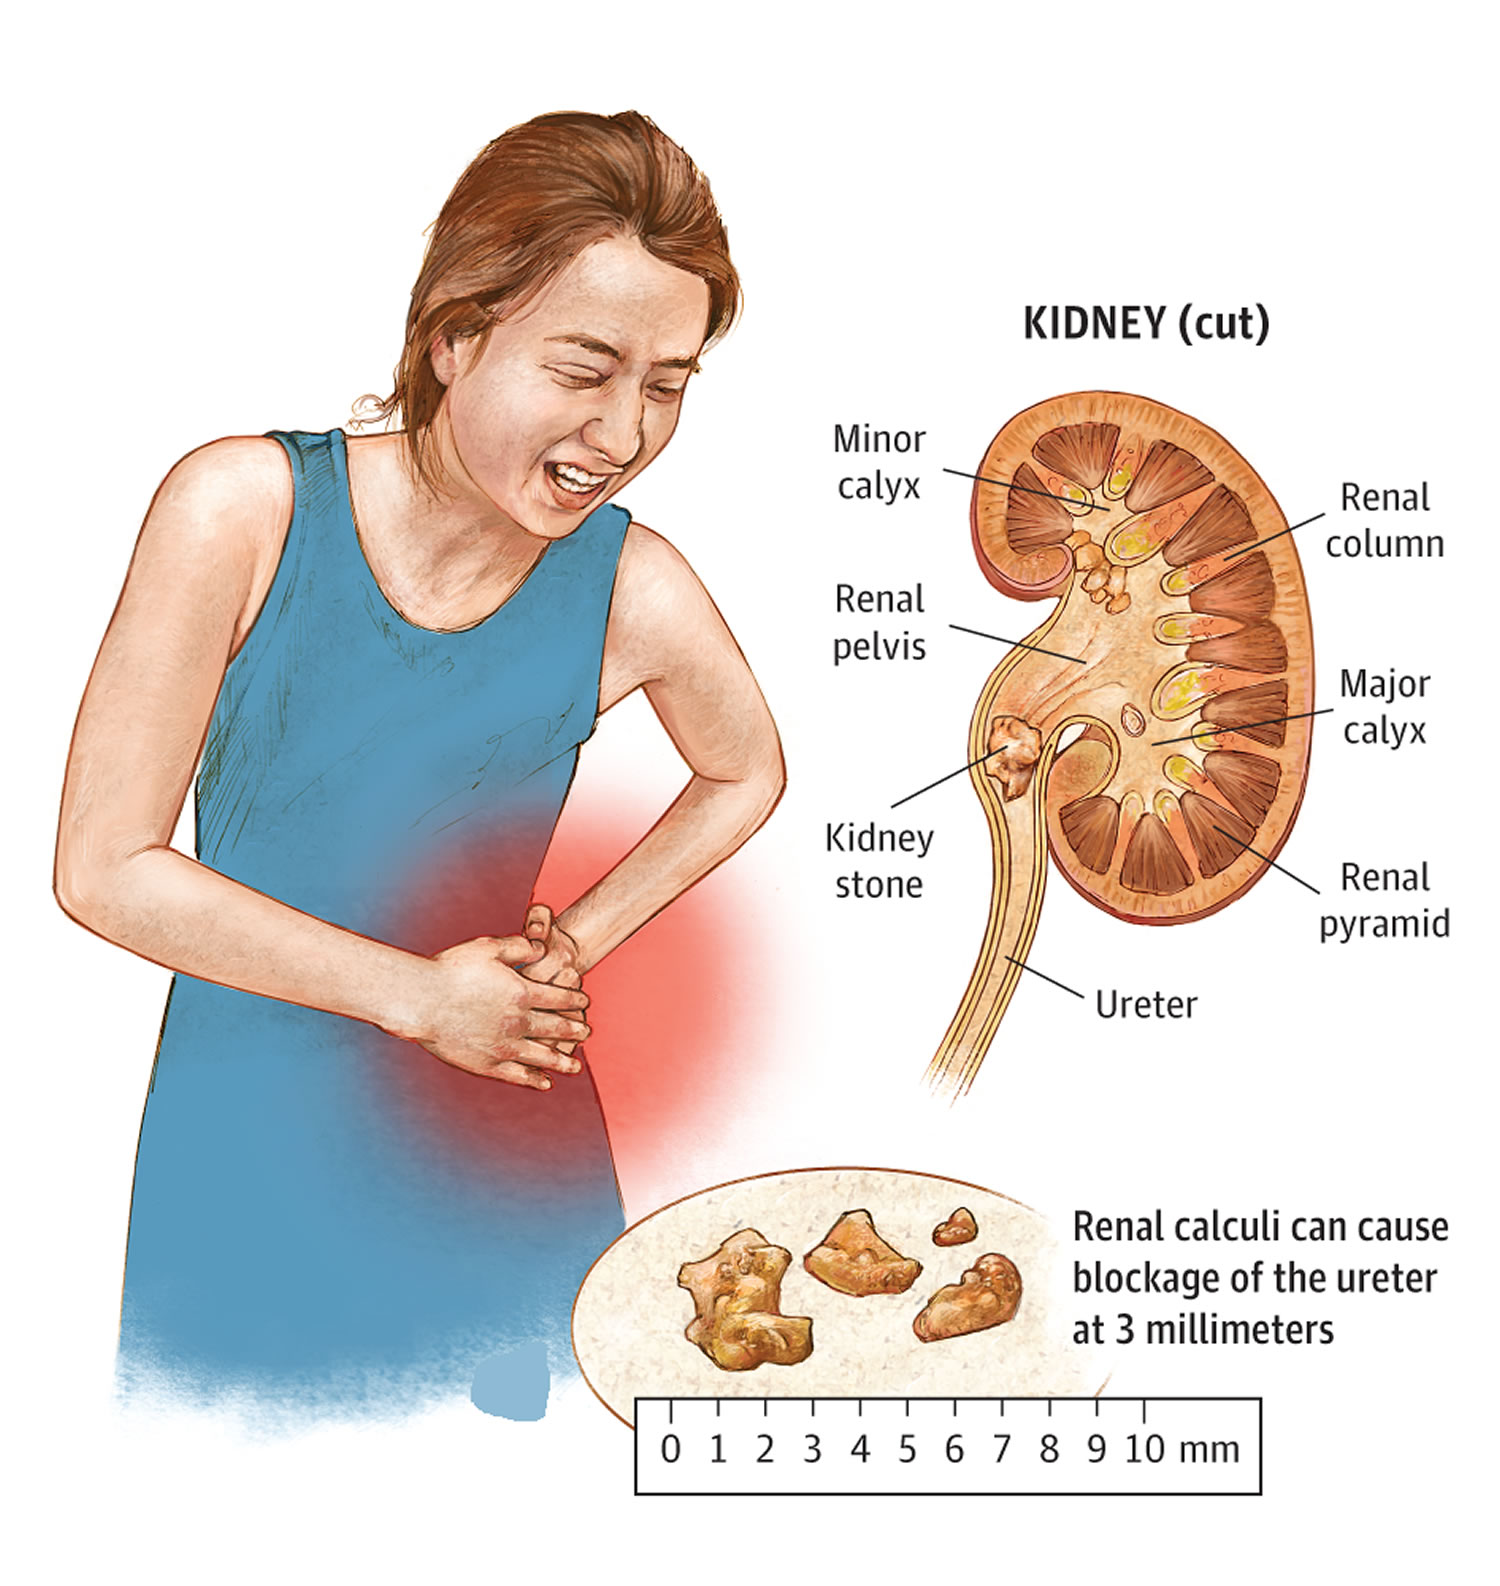 symptom of kidney stones